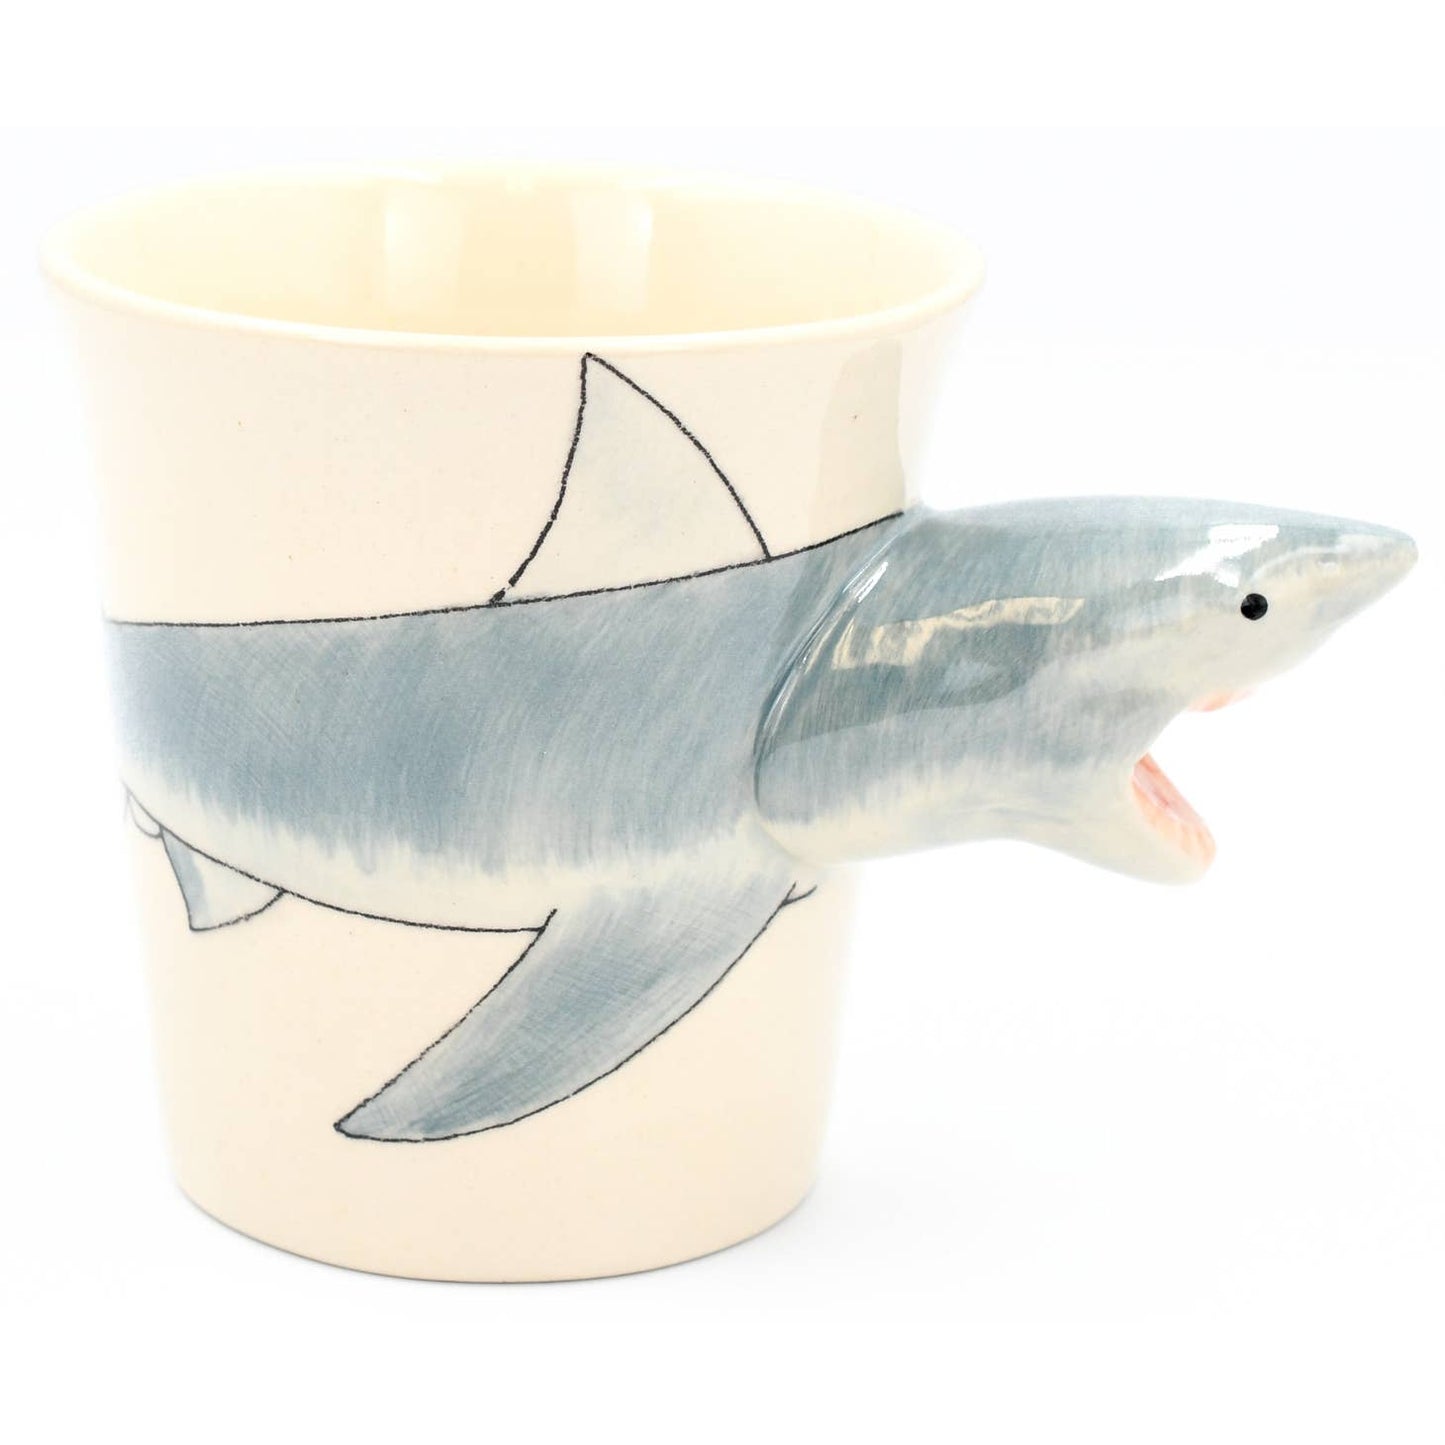 Shark Mug